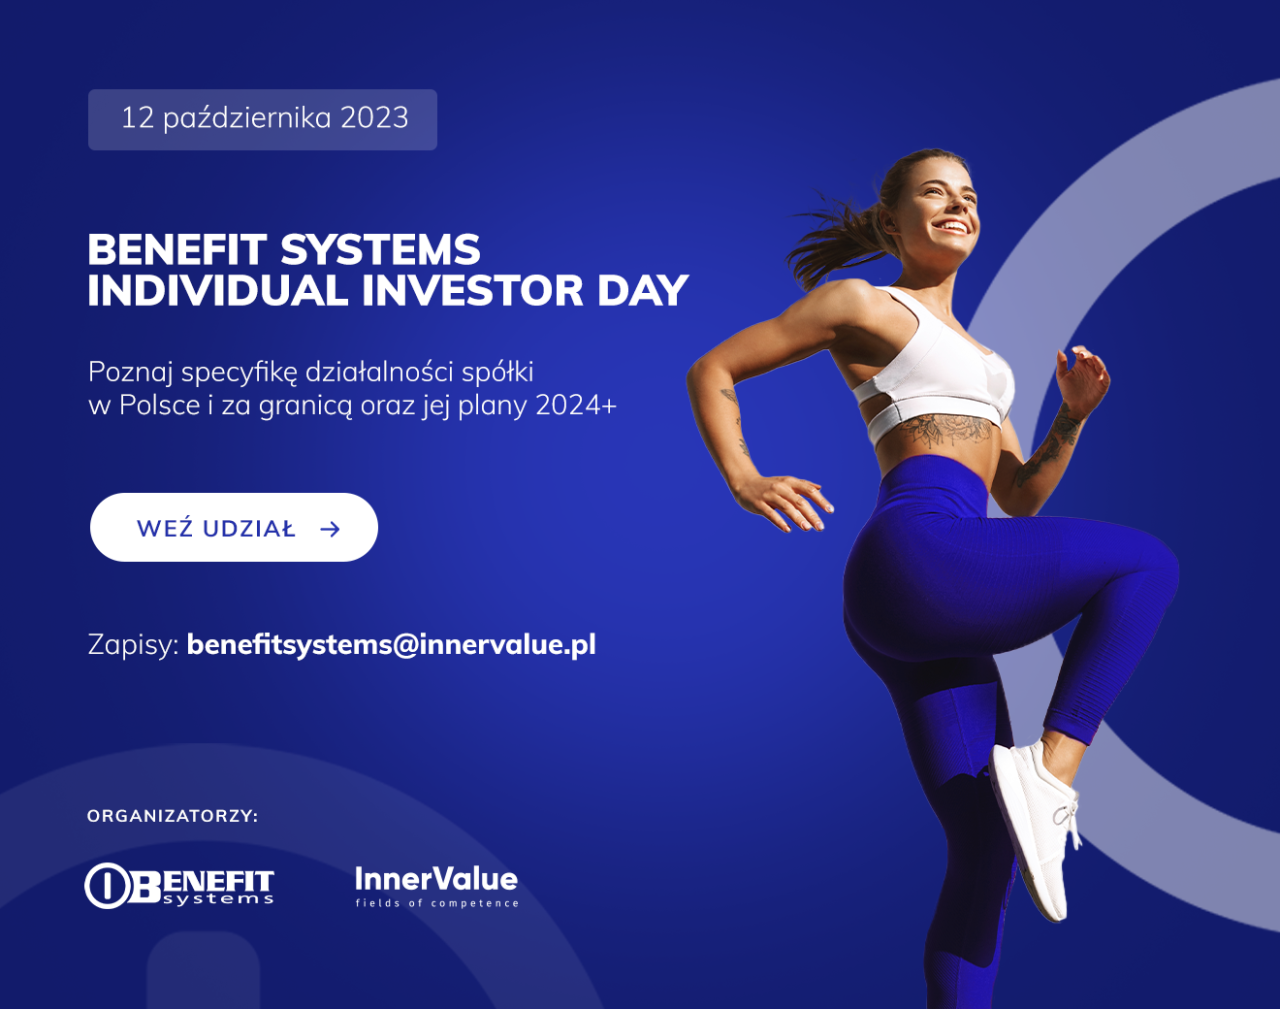 Benefit Systems Individual Investor Day już w czwartek. Poznaj plany rozwoju spółki na rynku polskim i zagranicznym